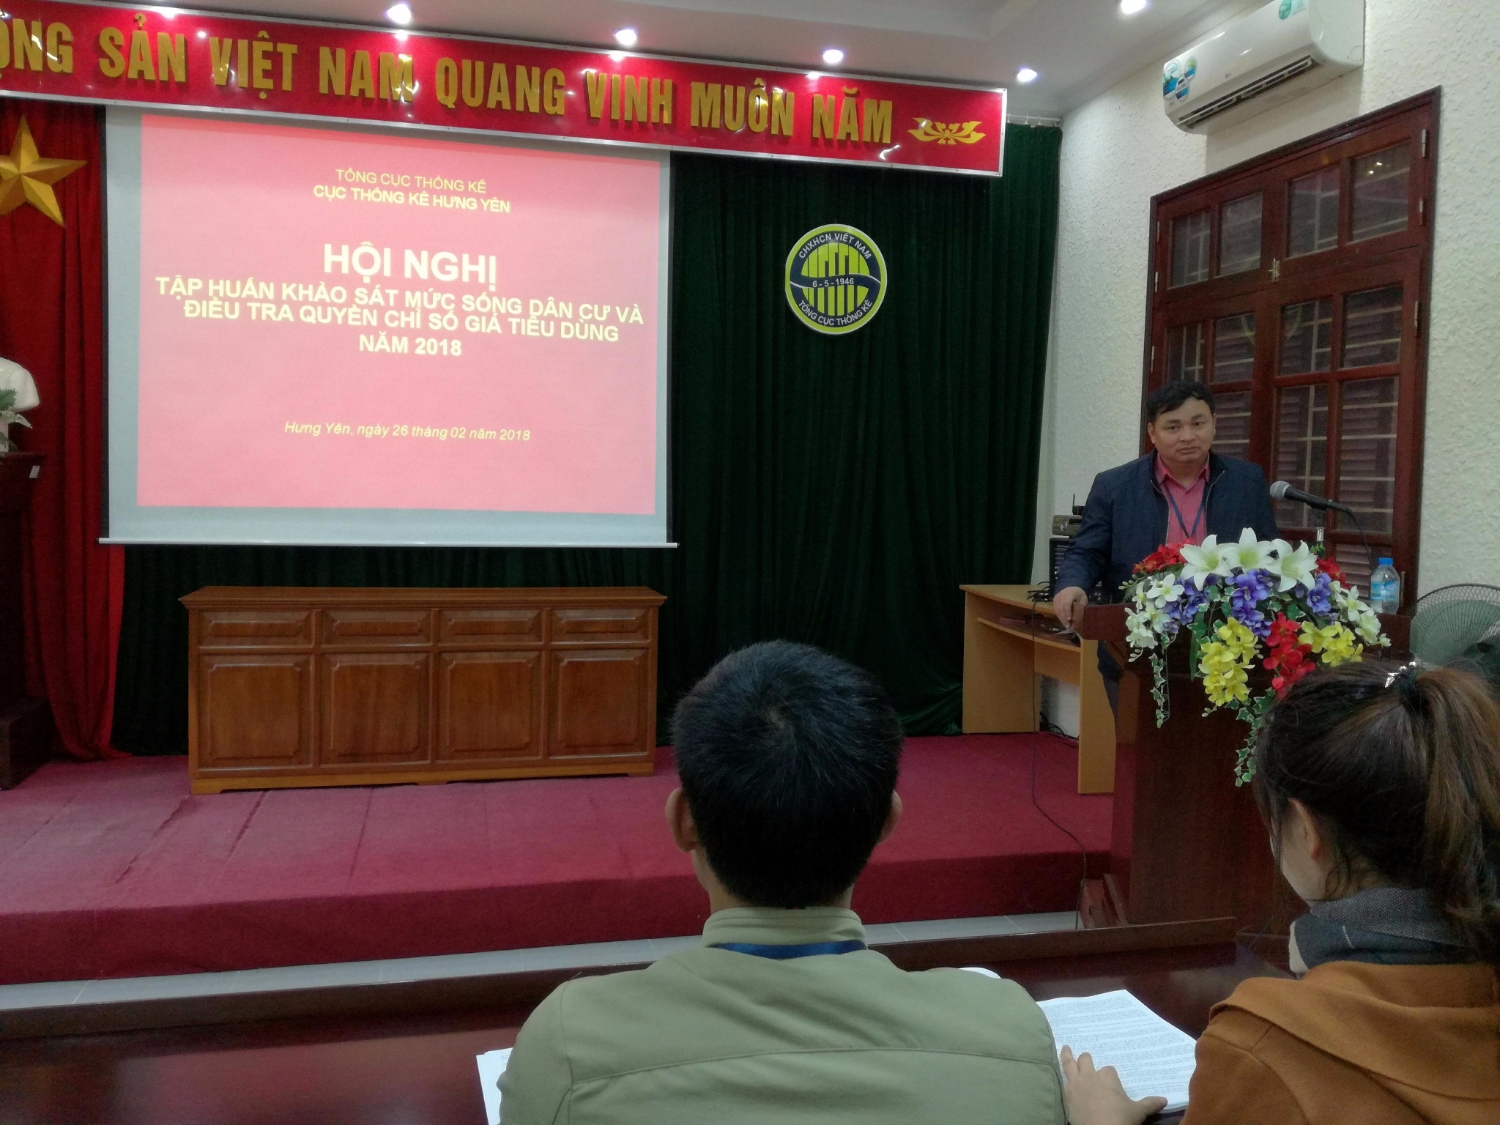 Ông Đỗ Minh Tâm – Phó cục trưởng Cục Thống kê Hưng Yên phát biểu và chỉ đạo hội nghị